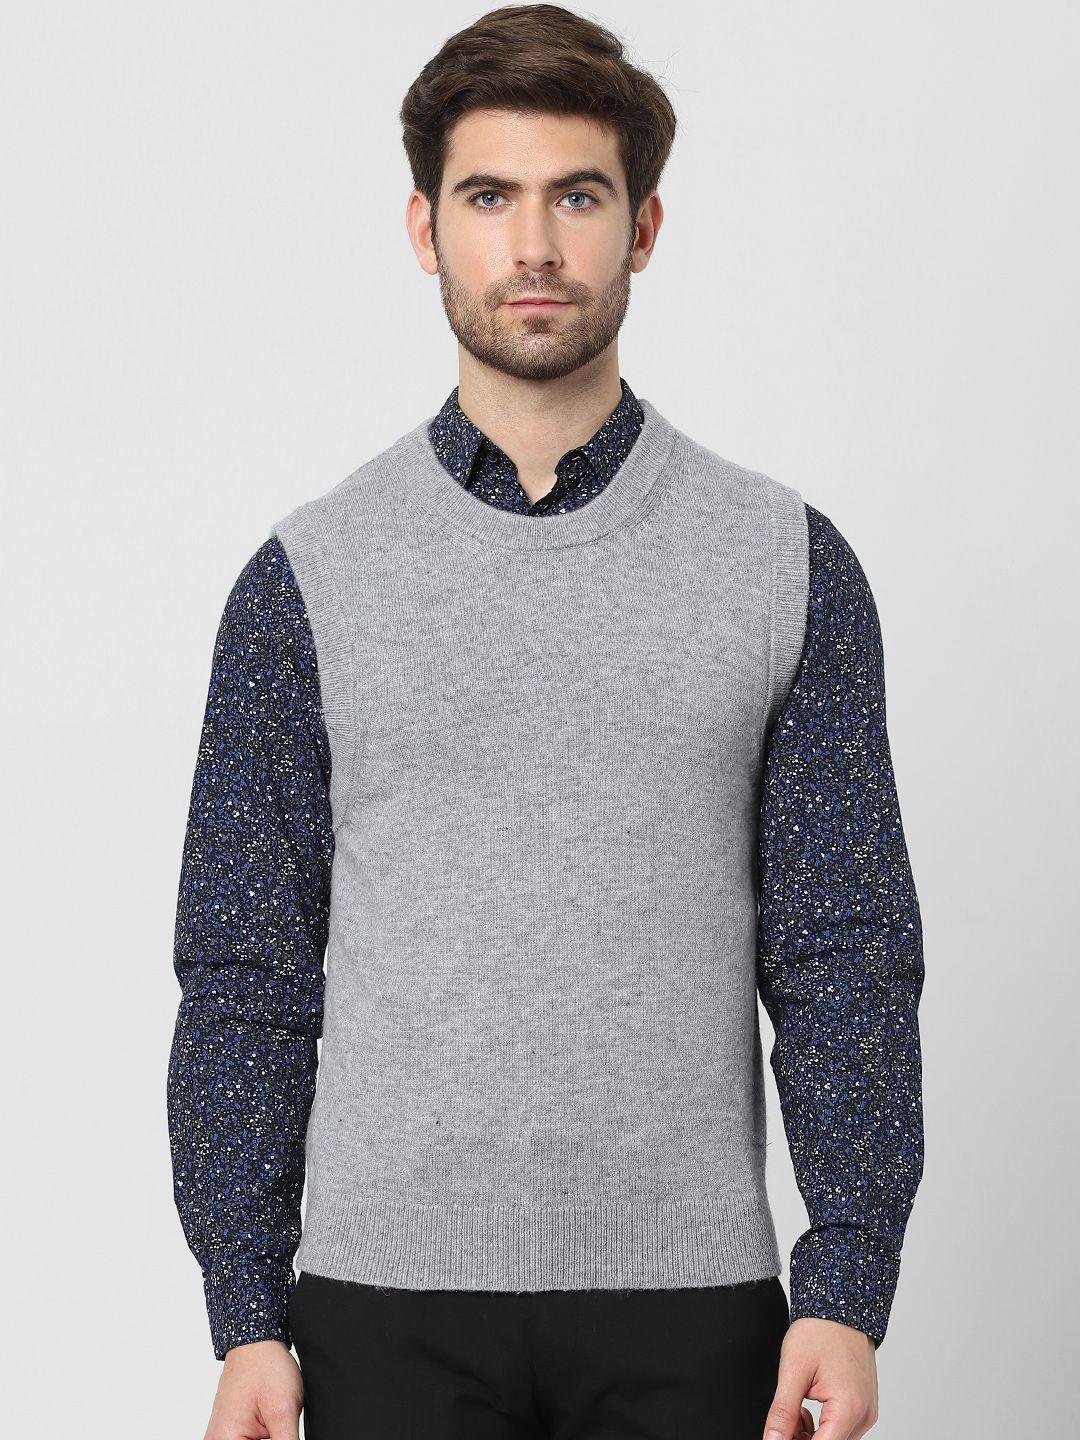 selected men grey sweater vest